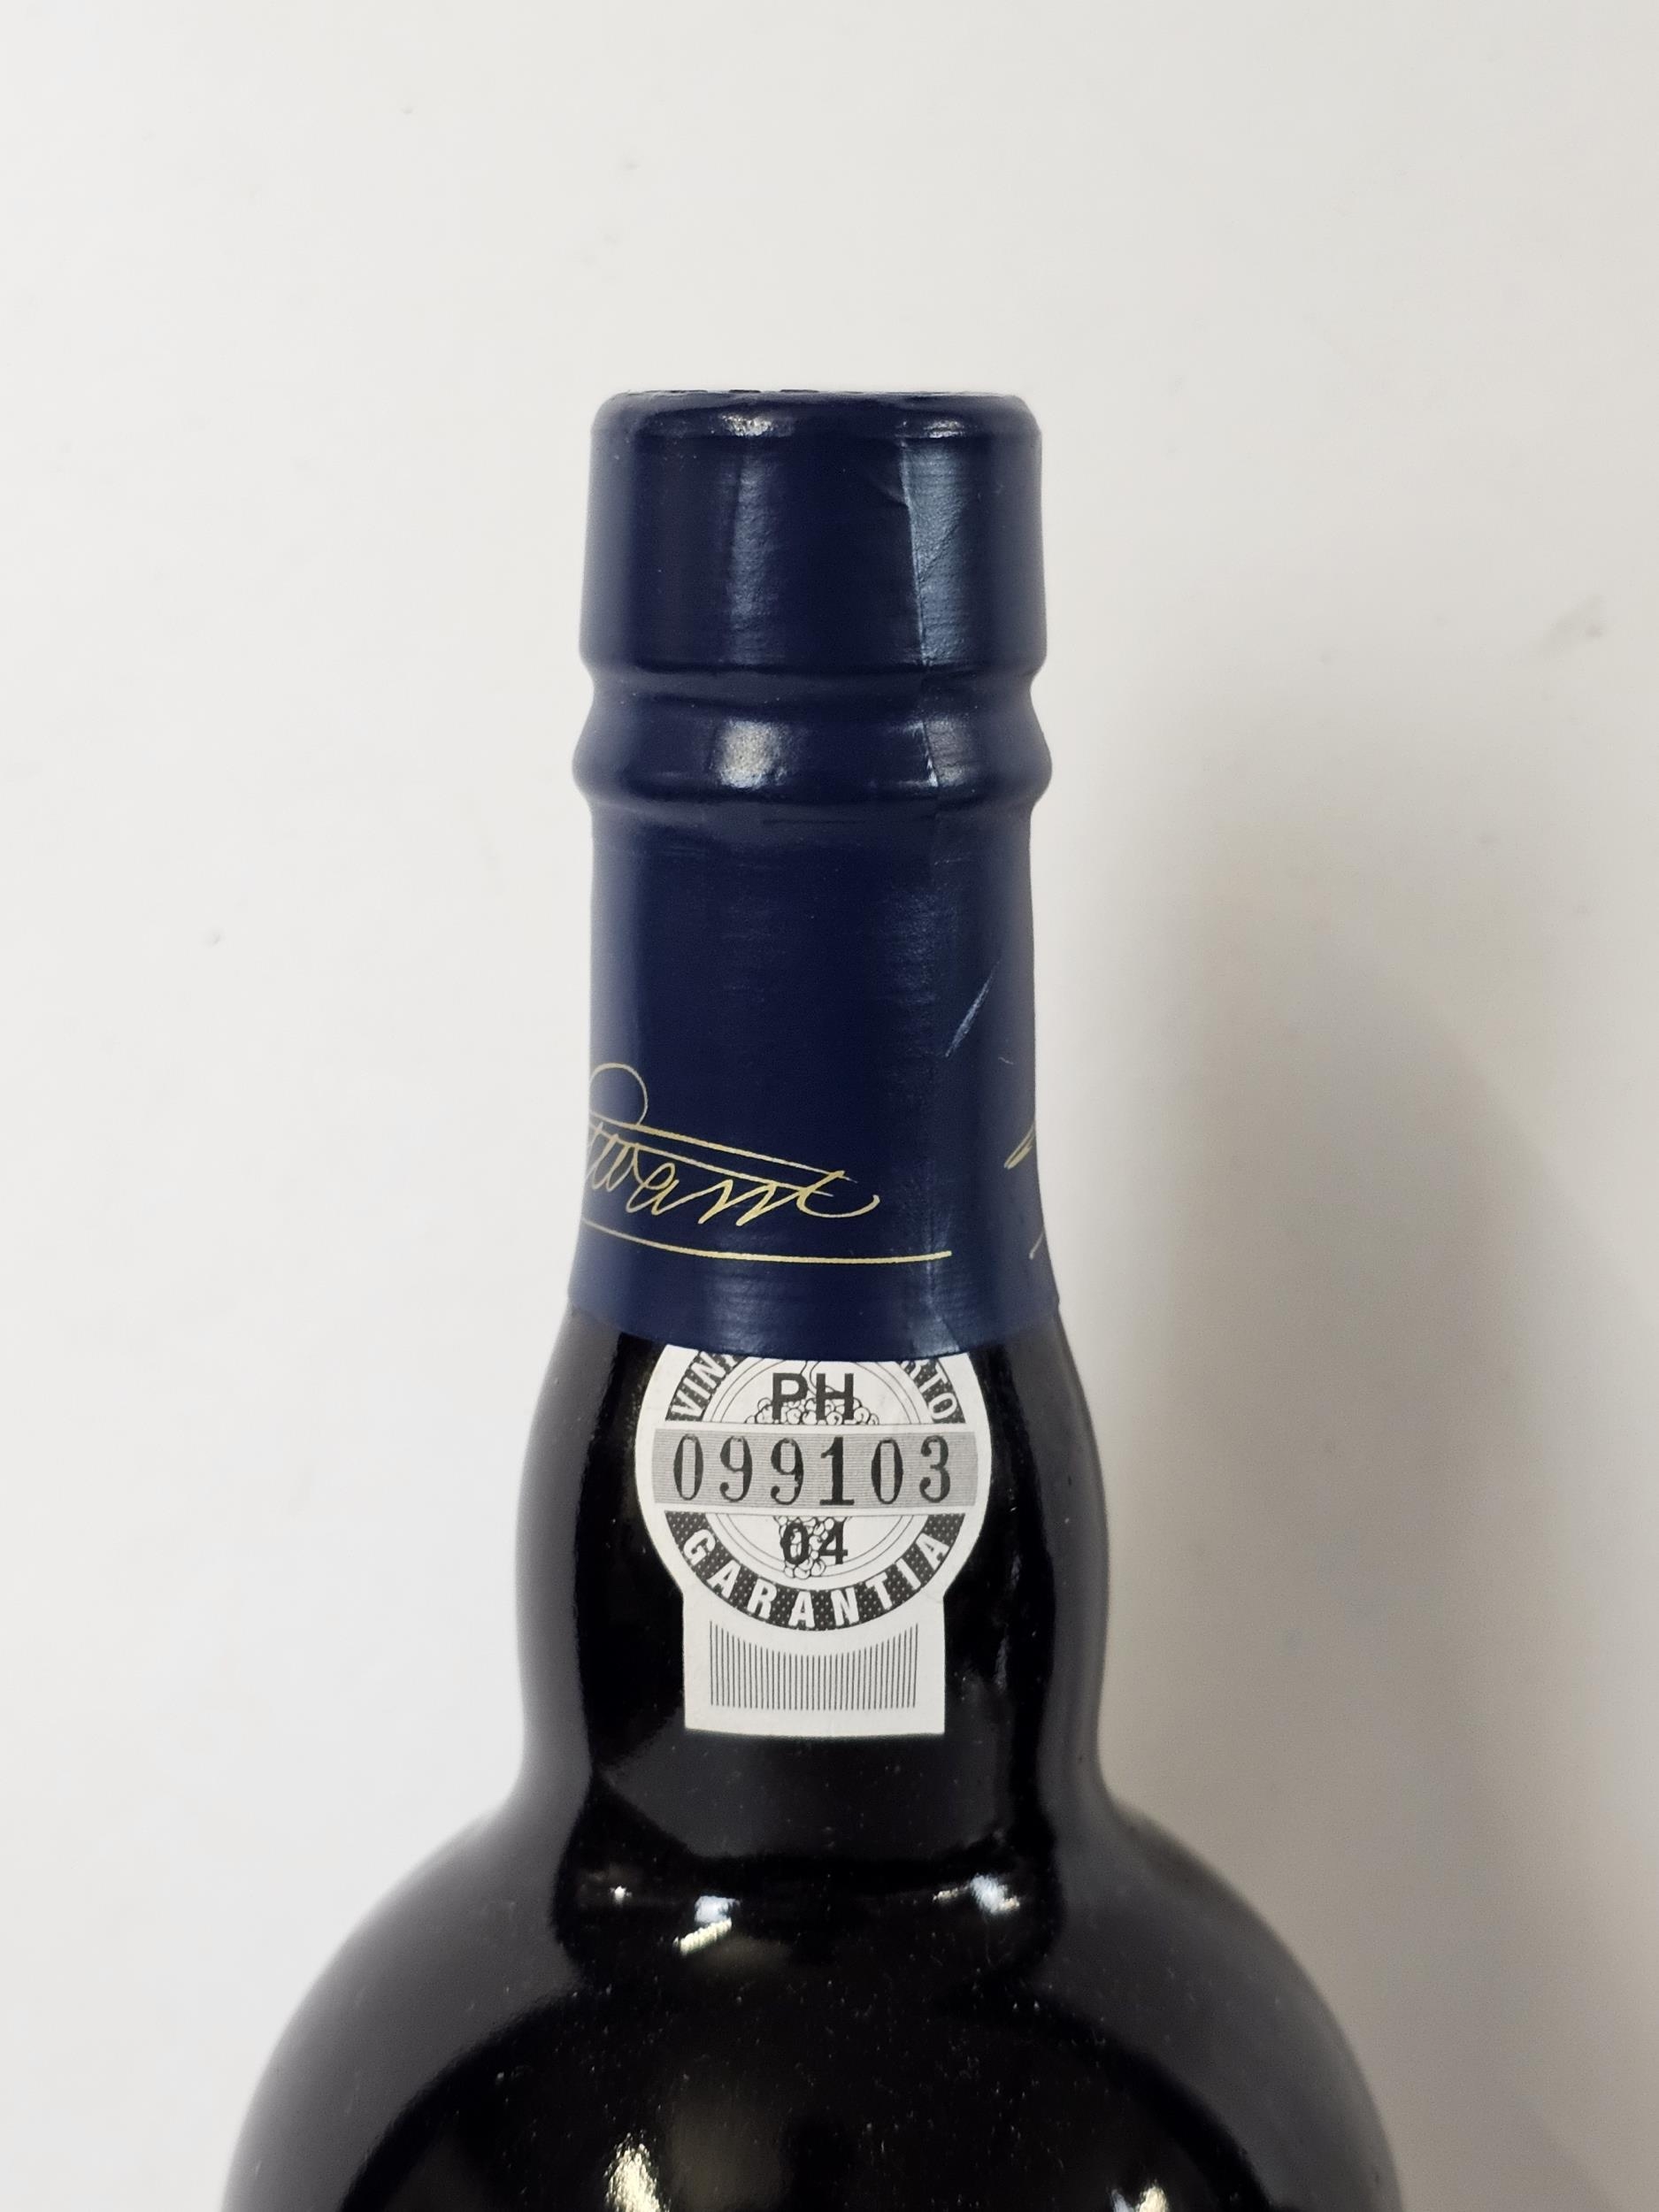 2001 Warre's Late Bottled Vintage Port, Portugal. 2 x 75cl bottles - Image 4 of 5